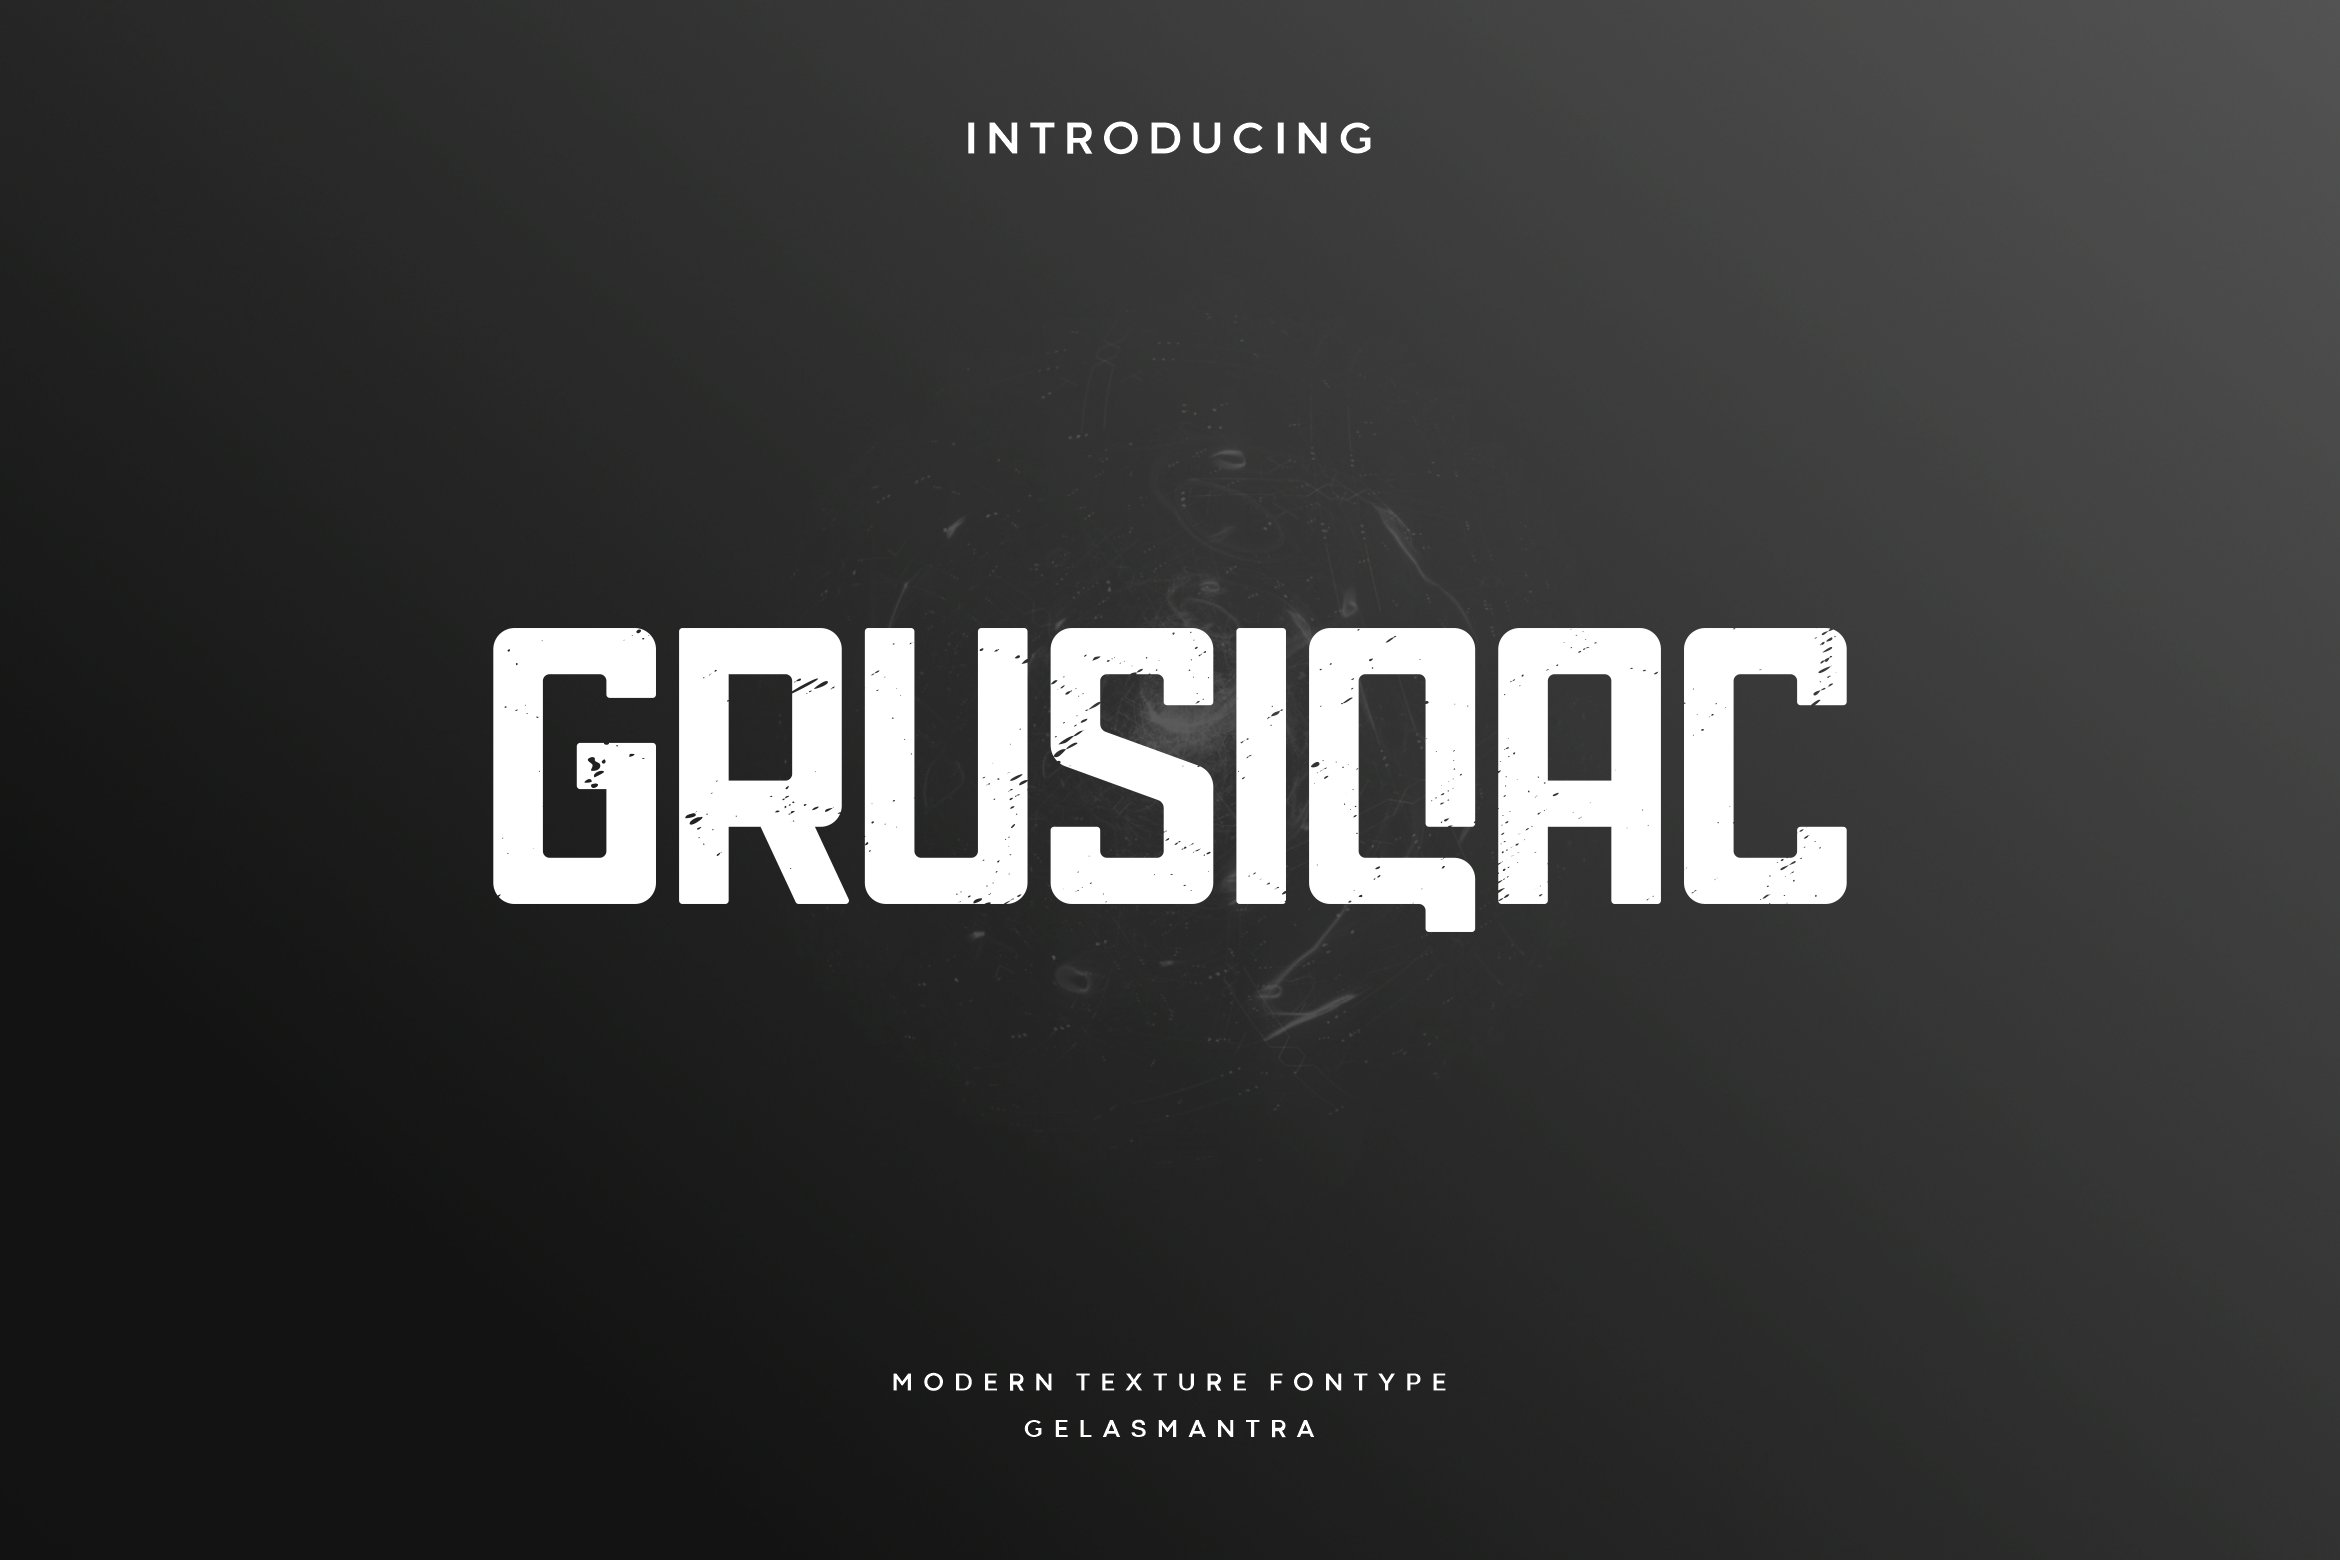 Grusiqac cover image.